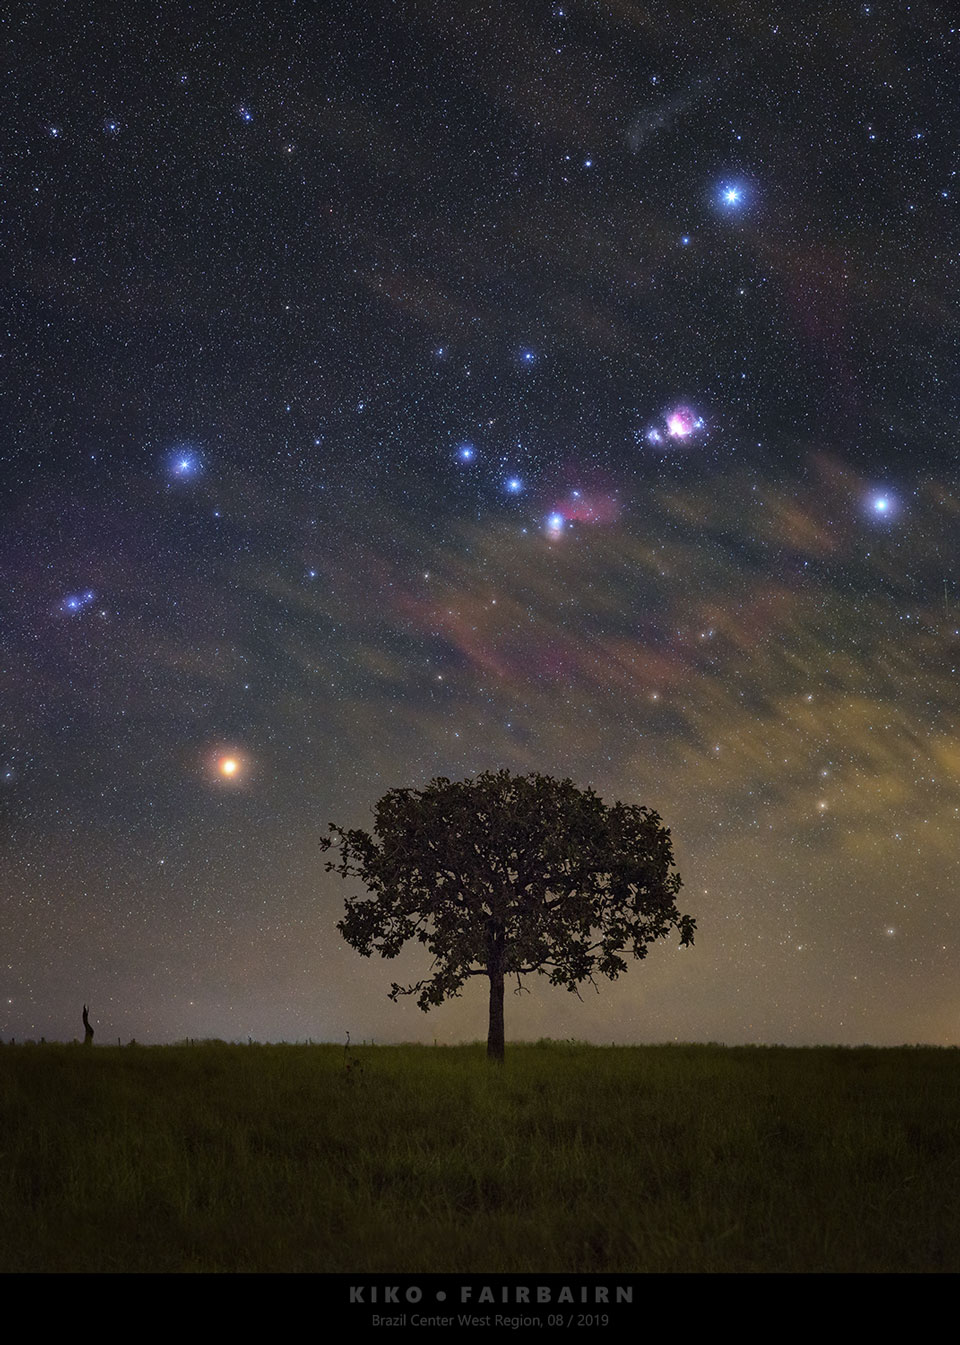 Über einer dunklen Silhouette mit Baum am Horizont türmt sich das markante Sternbild Orion auf, es liegt kopfüber auf der Seite.